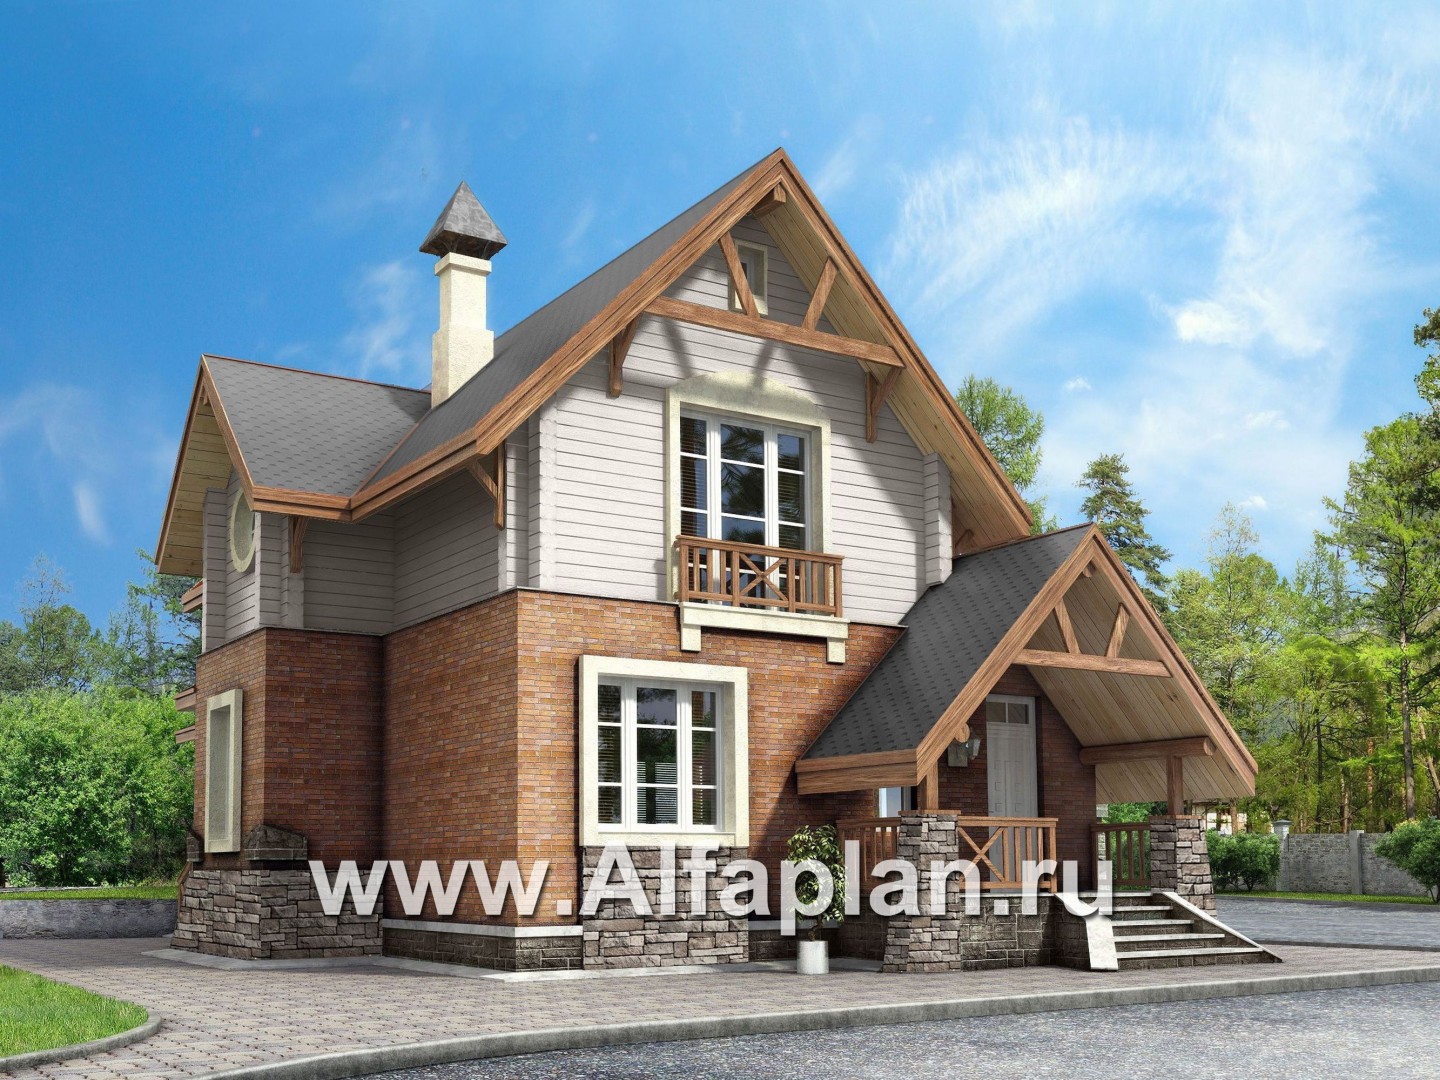 «Альпенхаус»- проект дома с мансардой, высокий потолок в гостиной, в стиле  шале, 1 эт из кирпича, 2 эт из бруса - дизайн дома №1